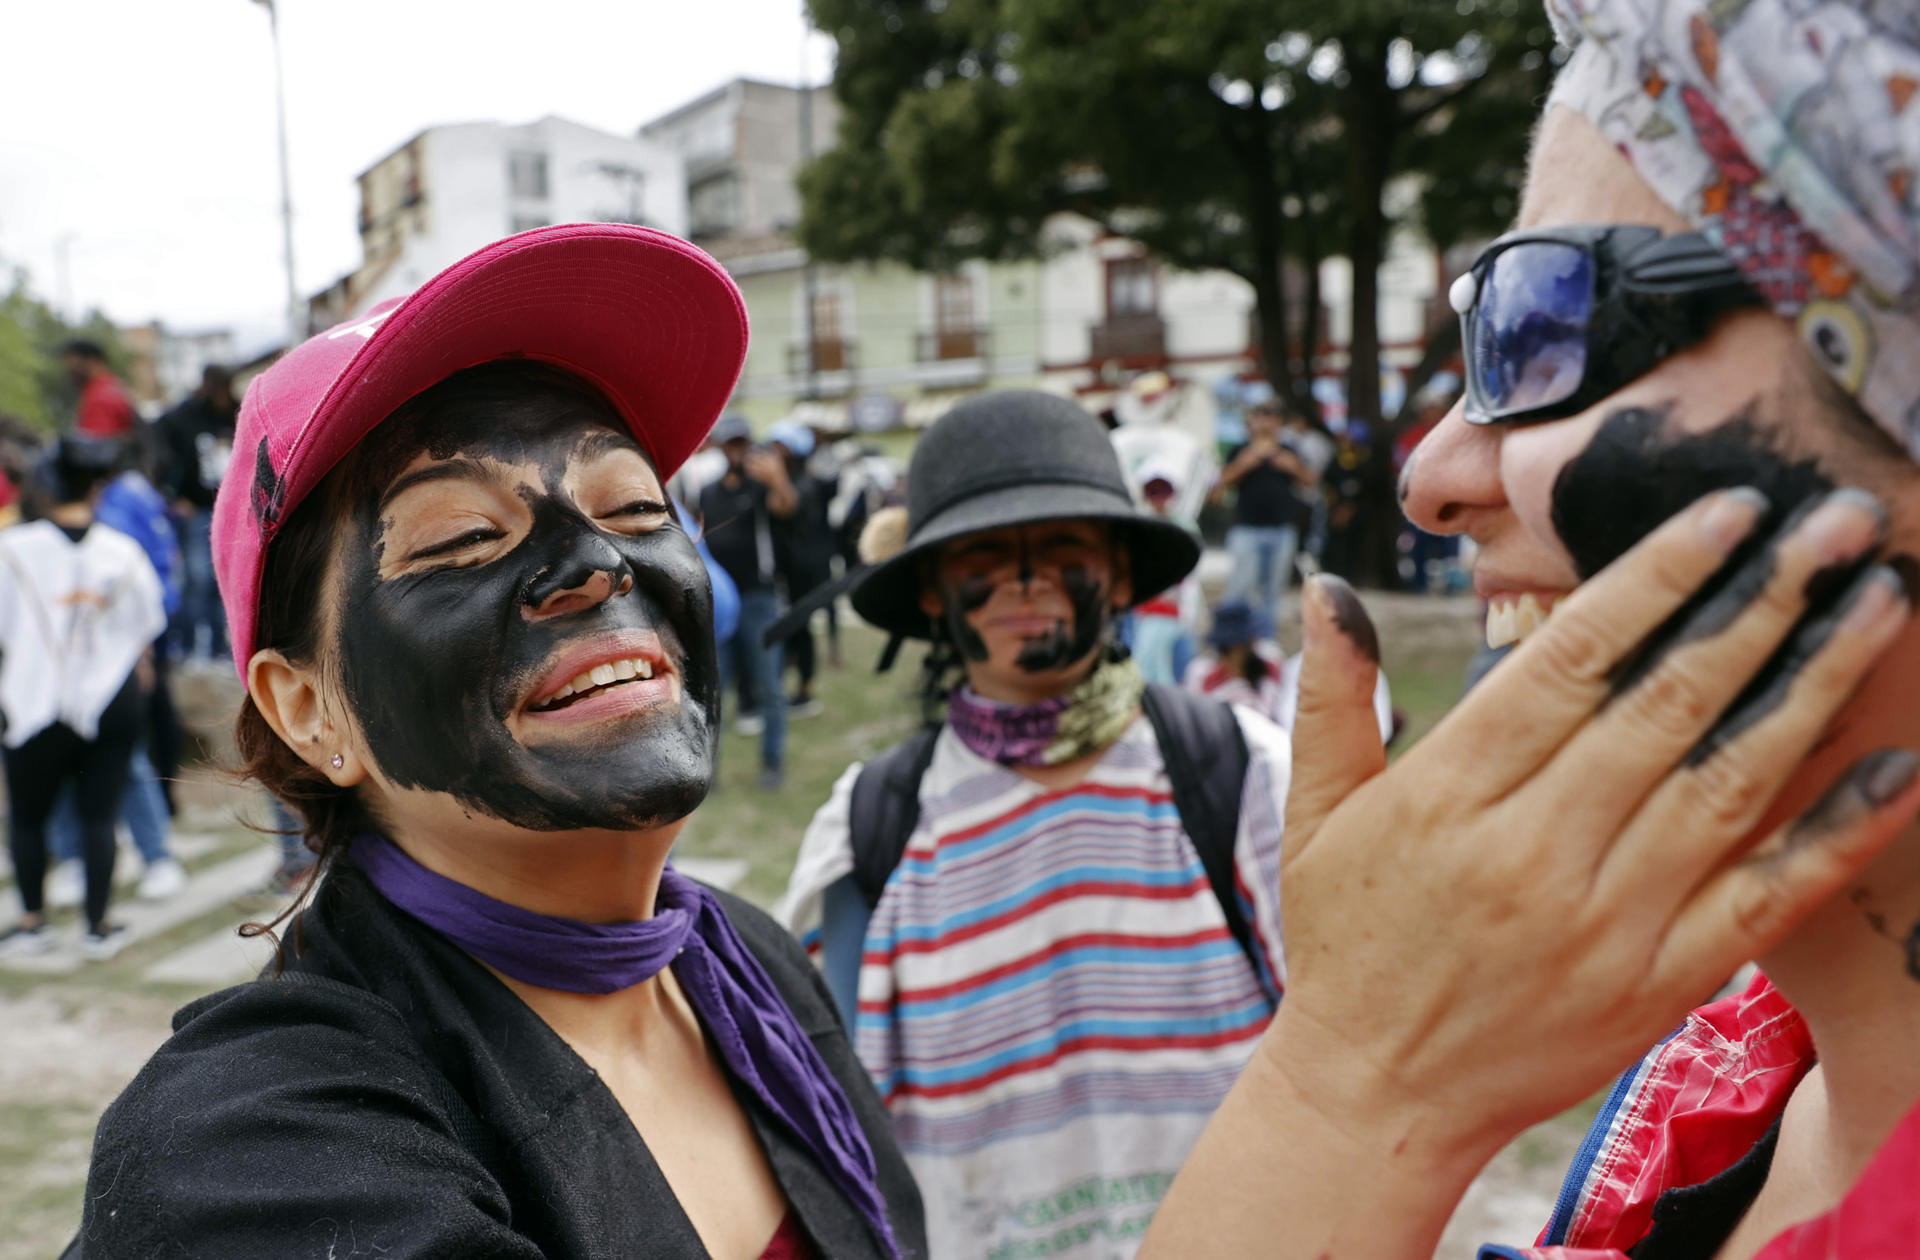 Una mujer pinta el rostro de otra durante el denominado 'Día de negritos' del Carnaval de Negros y Blancos, hoy, en Pasto (Colombia).  EFE/Mauricio Dueñas Castañeda